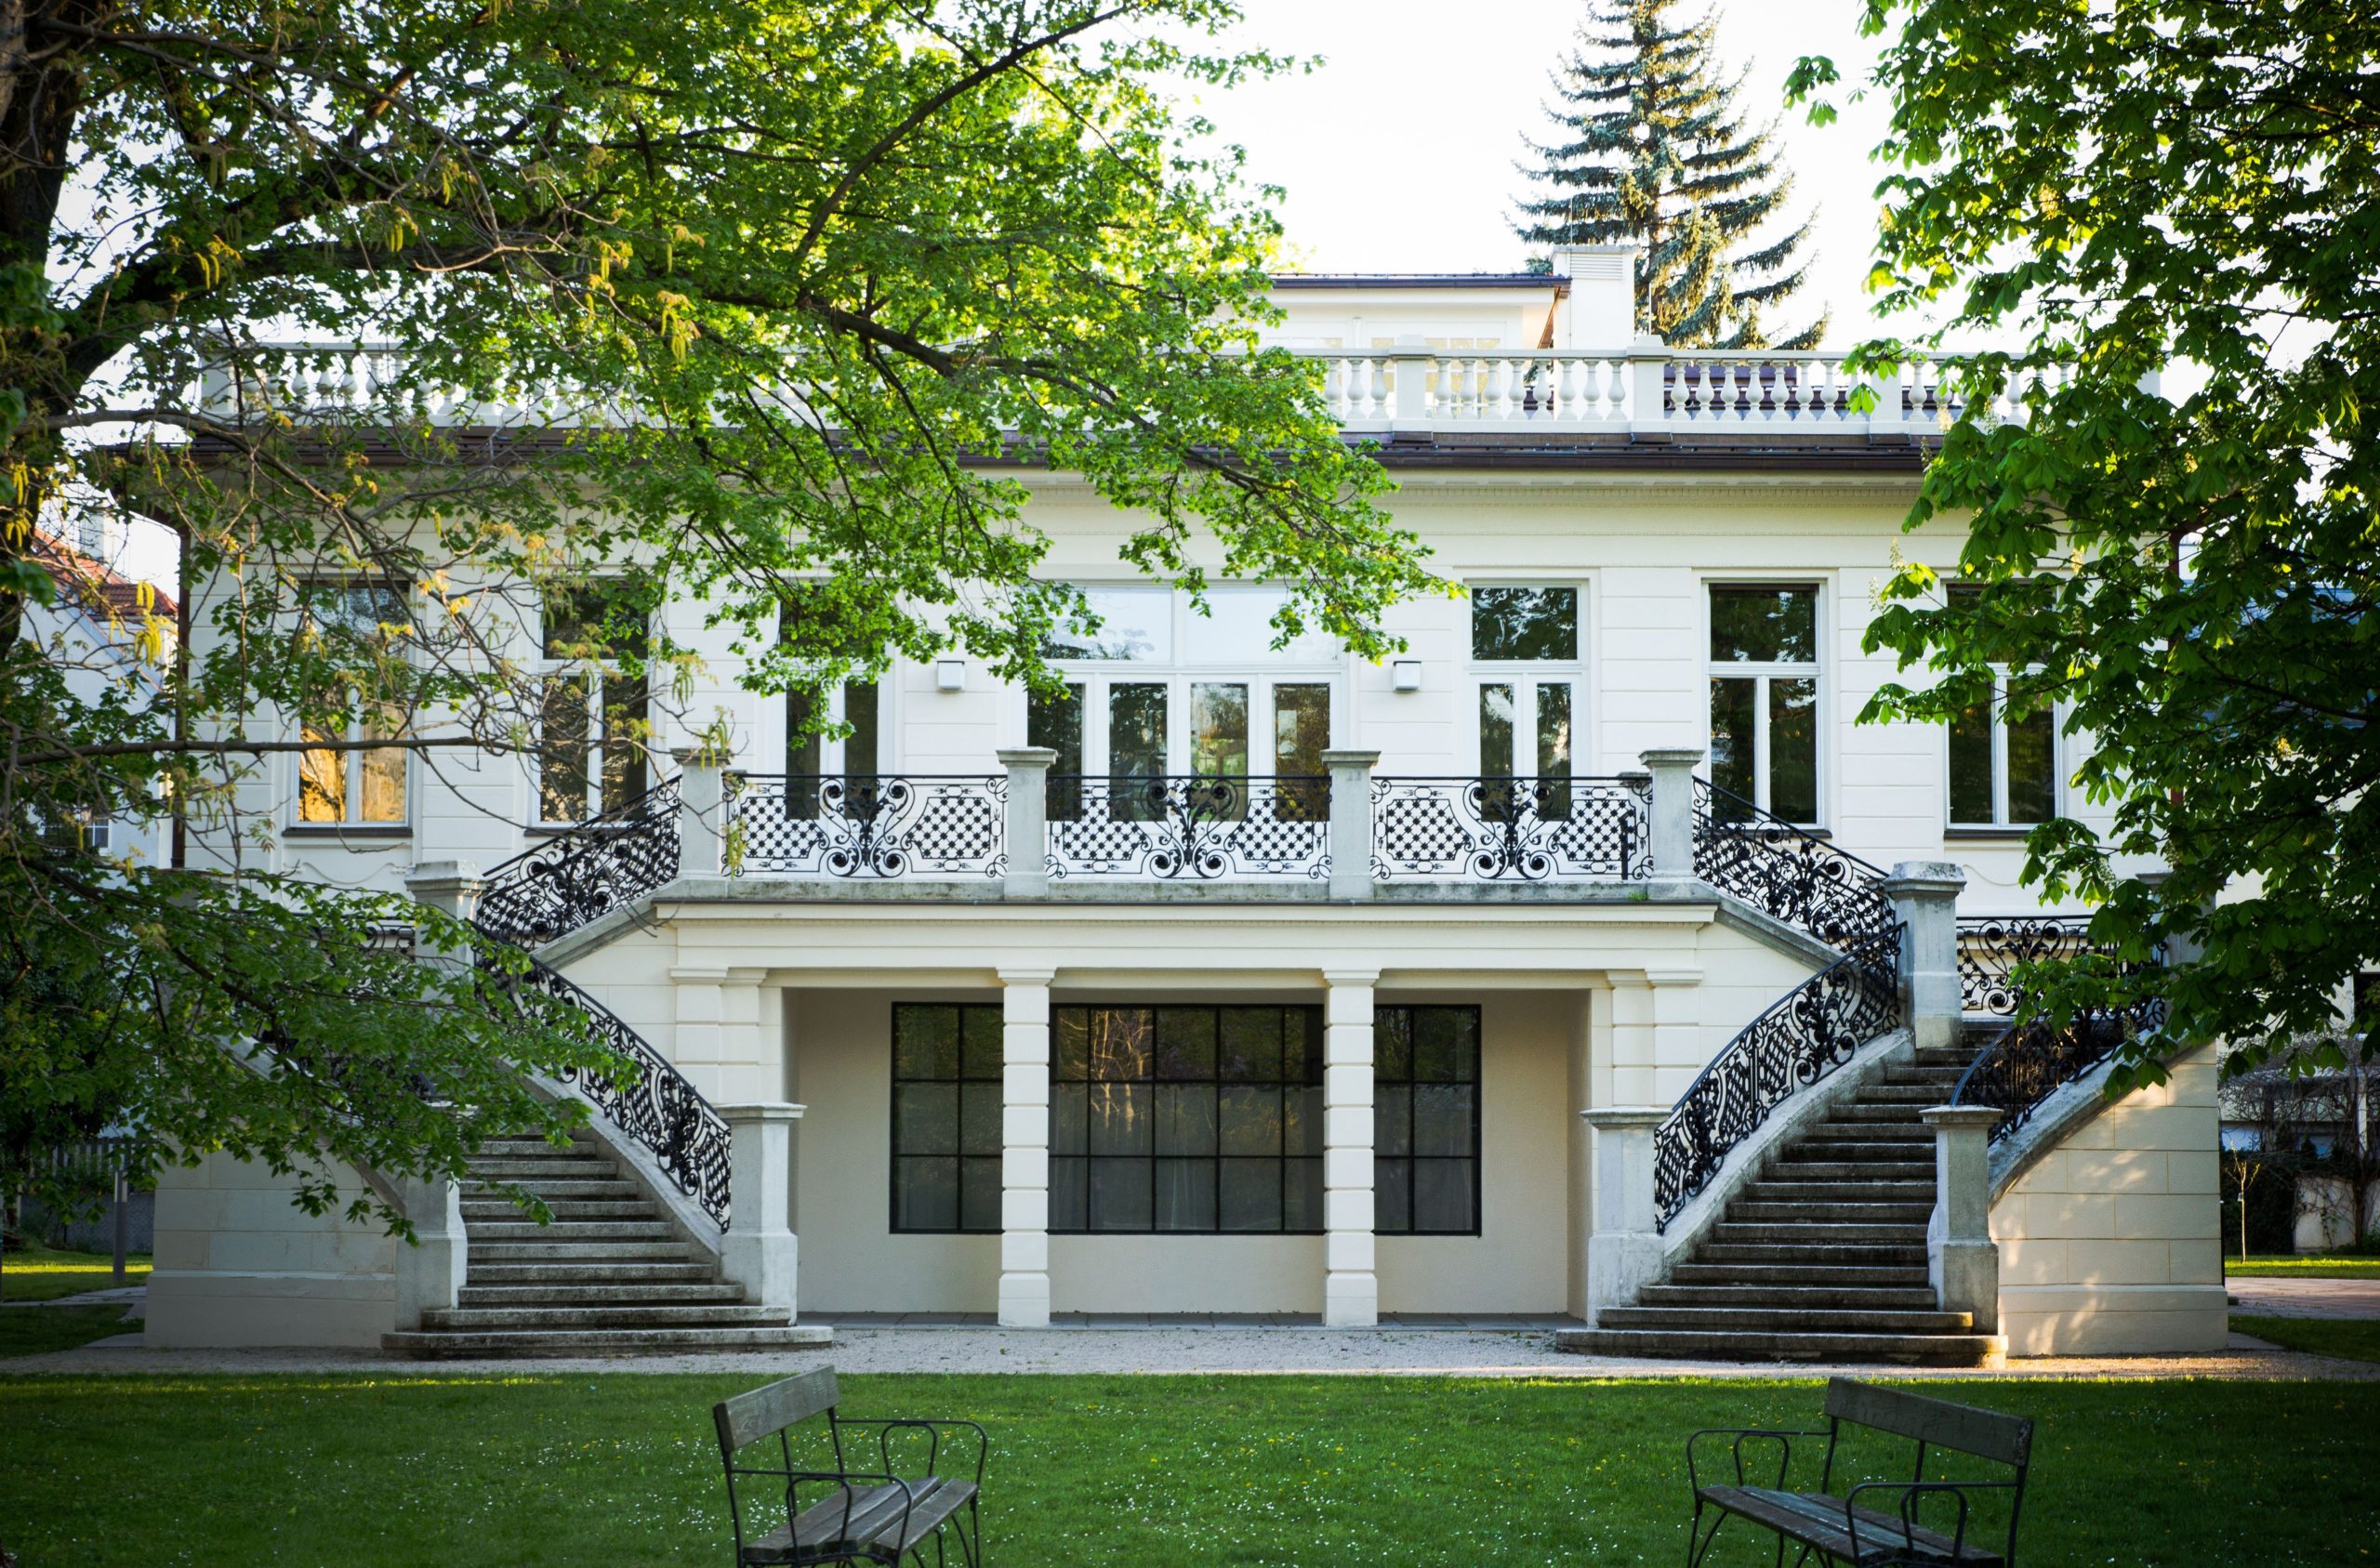 Besuch der Klimt-Villa